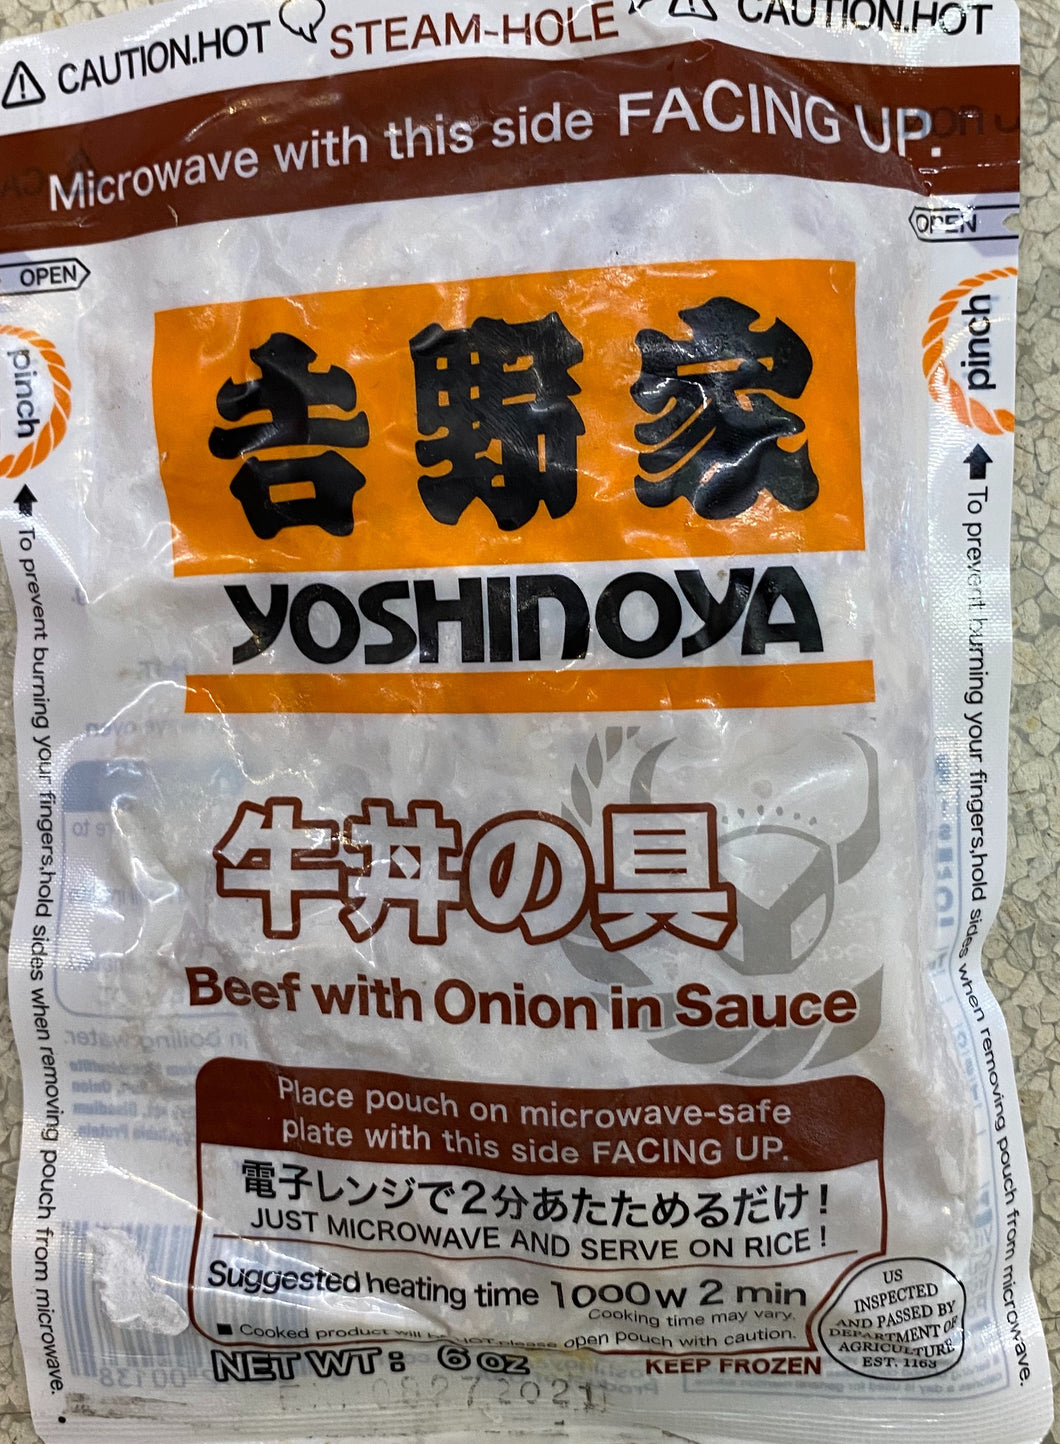 Yoshinoya Beef with Onion in Sauce